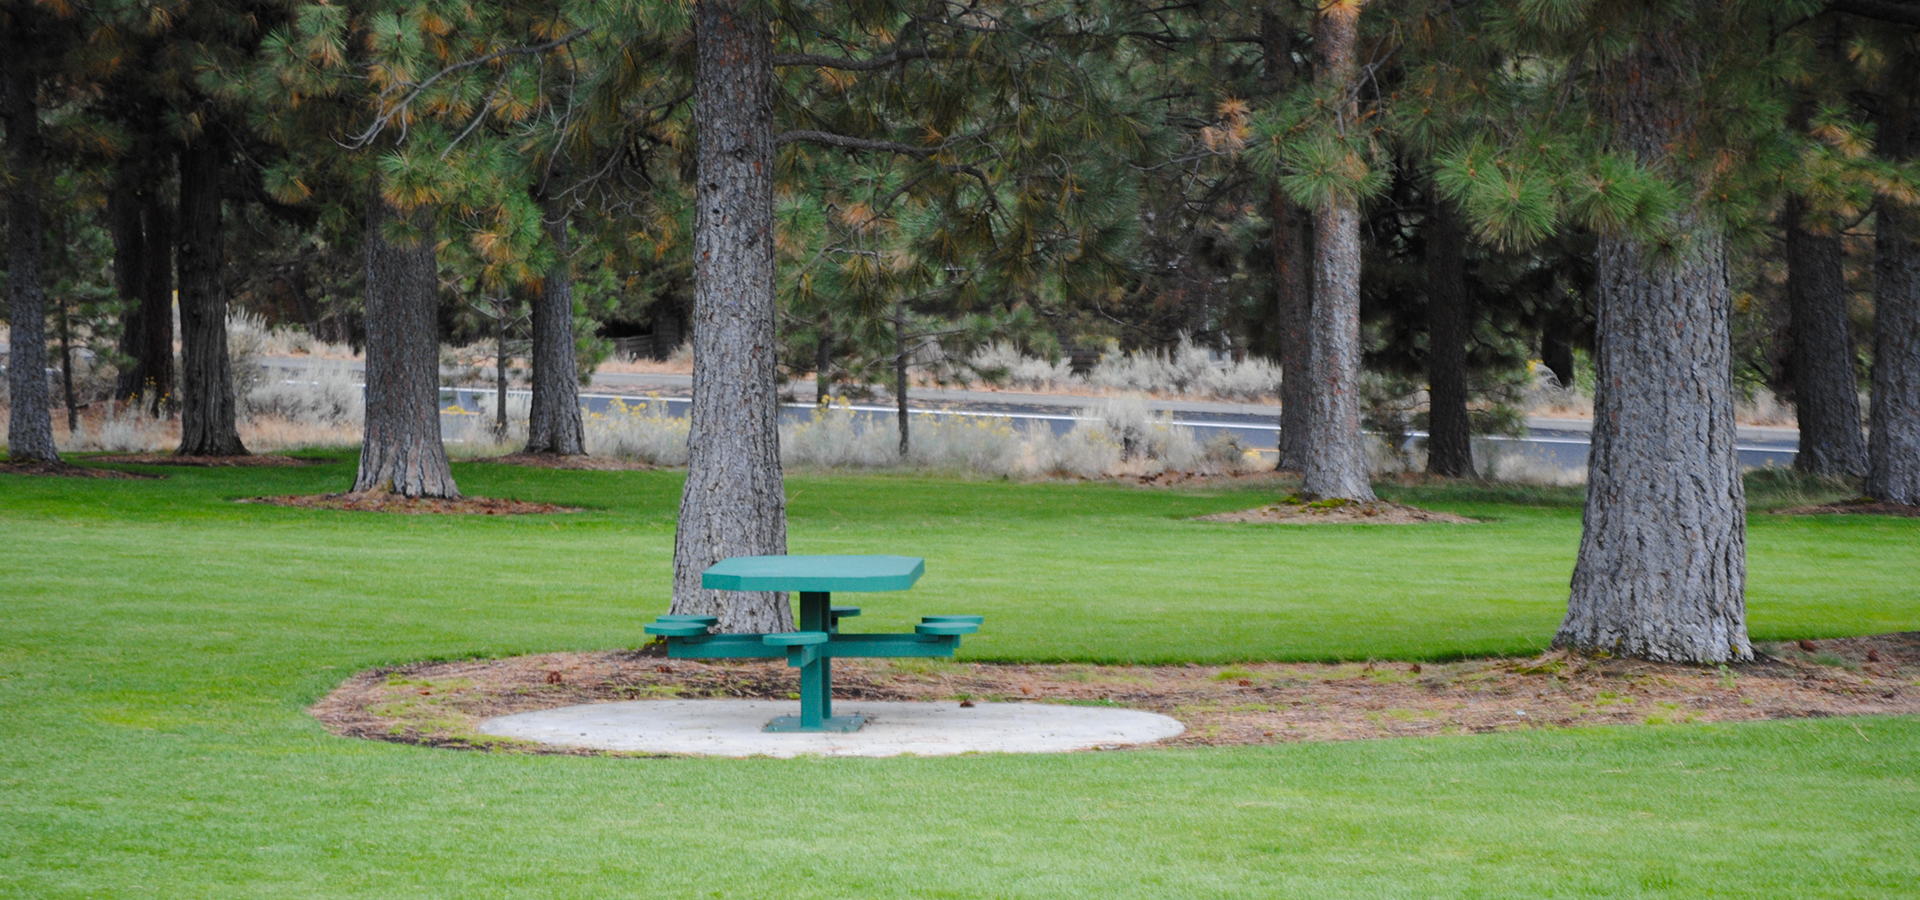 A picnic table at Summit Park.